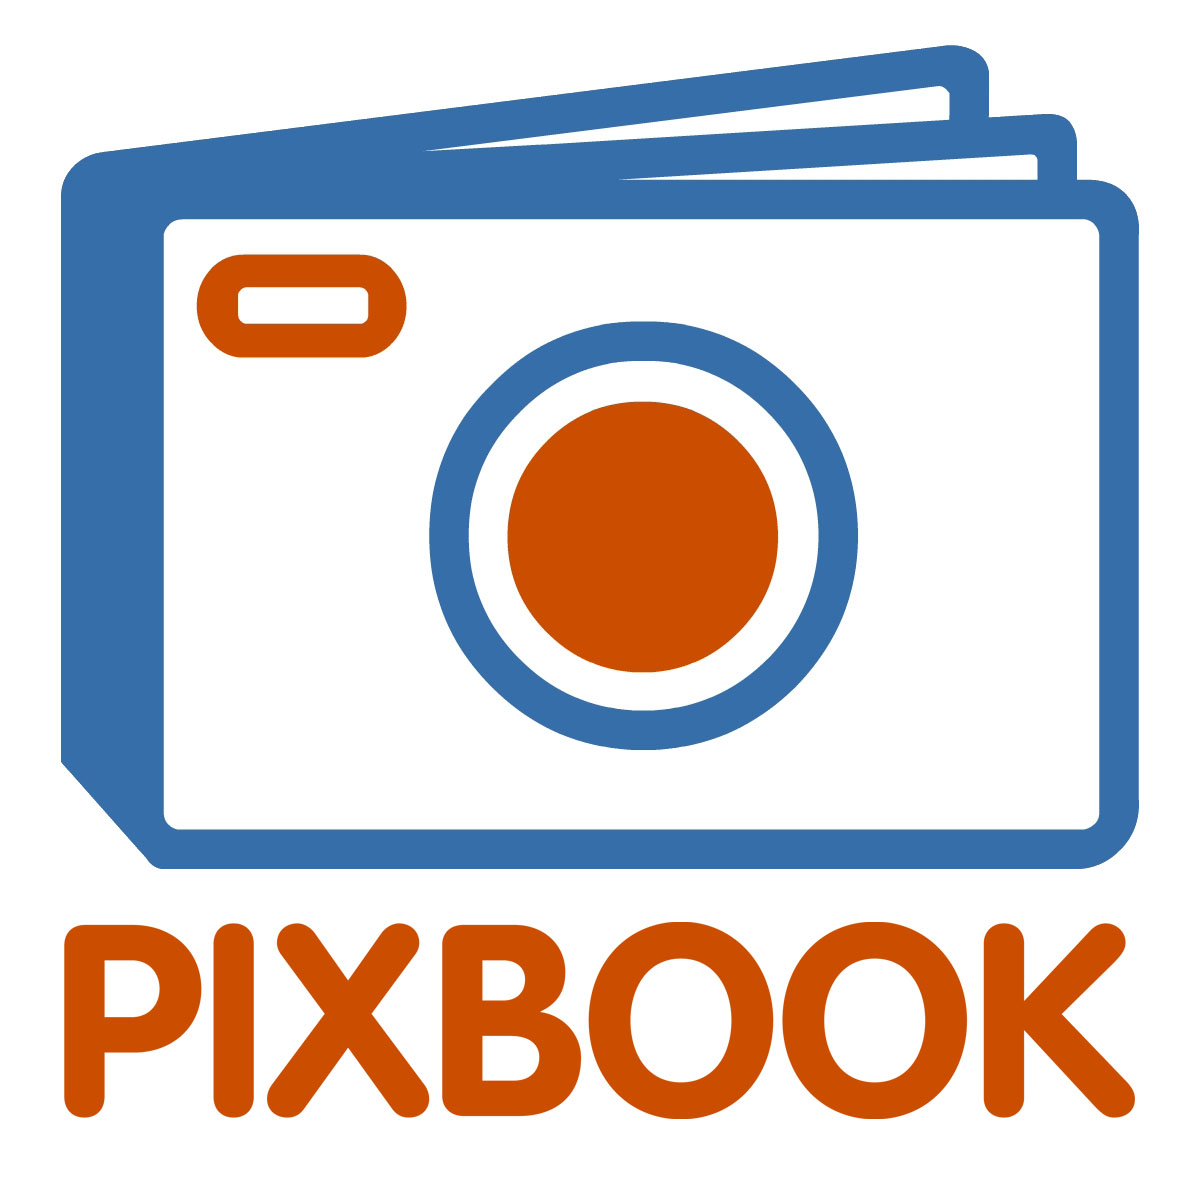 (c) Pixbook.net